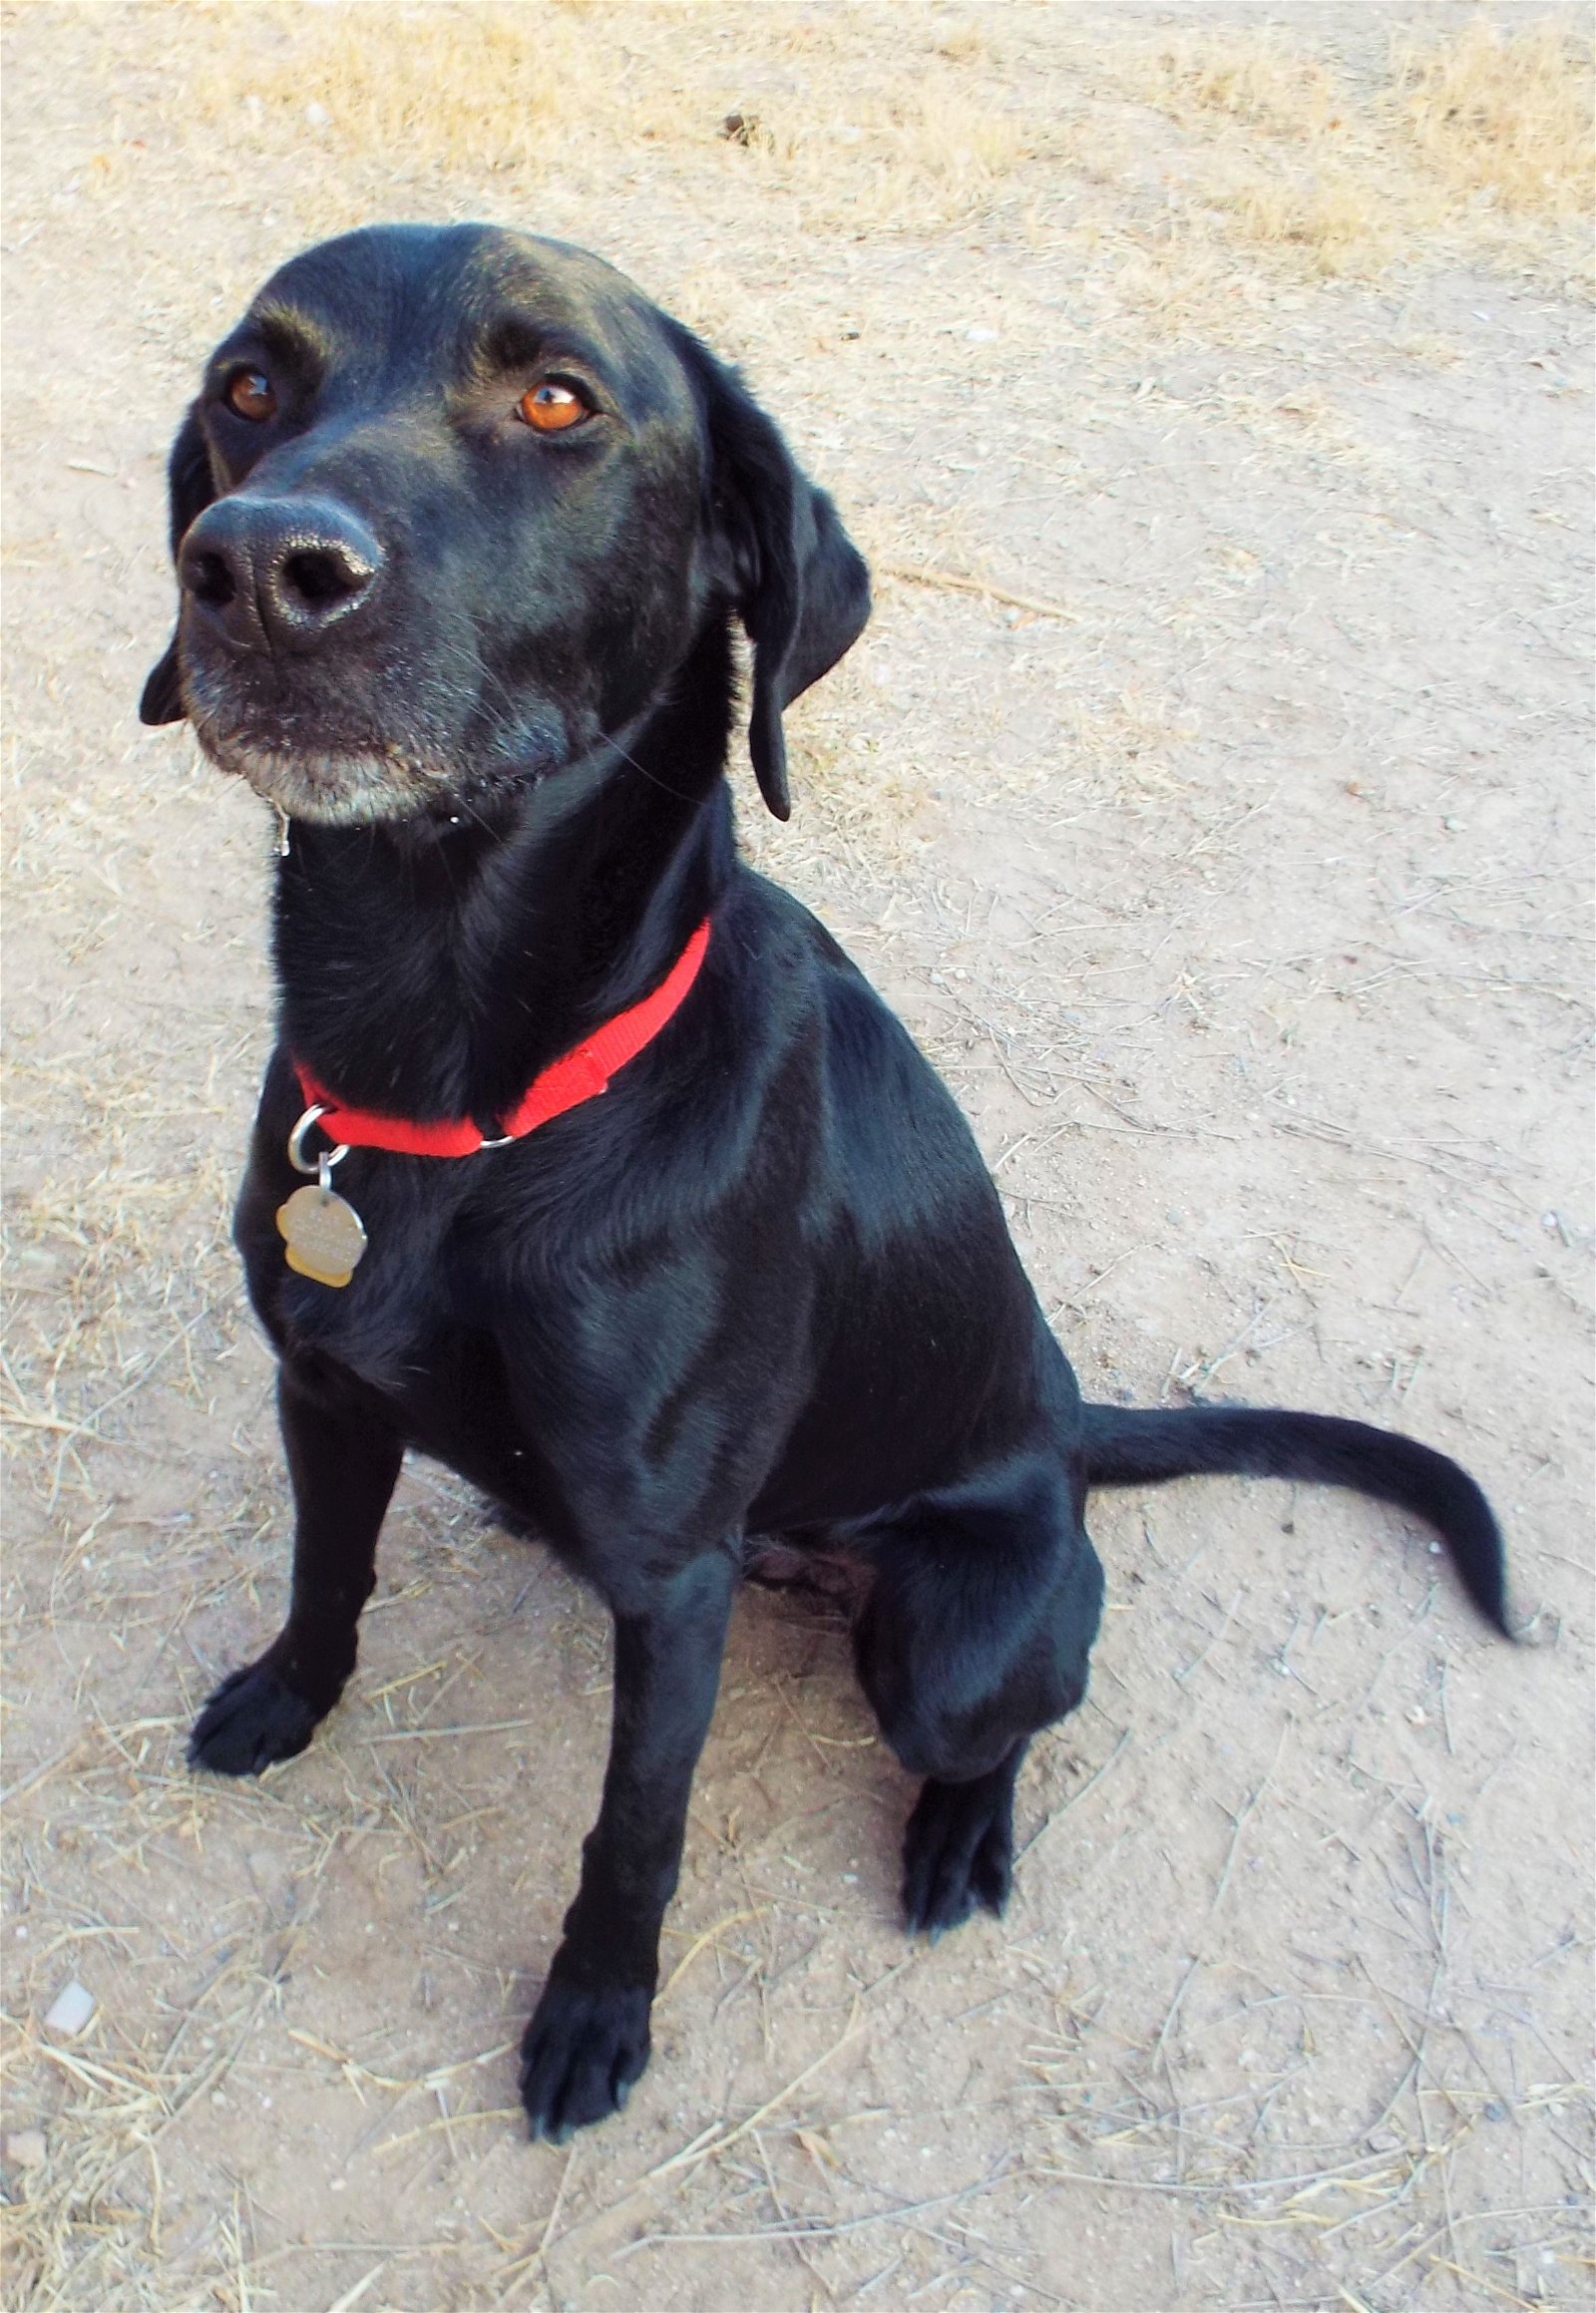 adoptable Dog in Tucson, AZ named Douglas